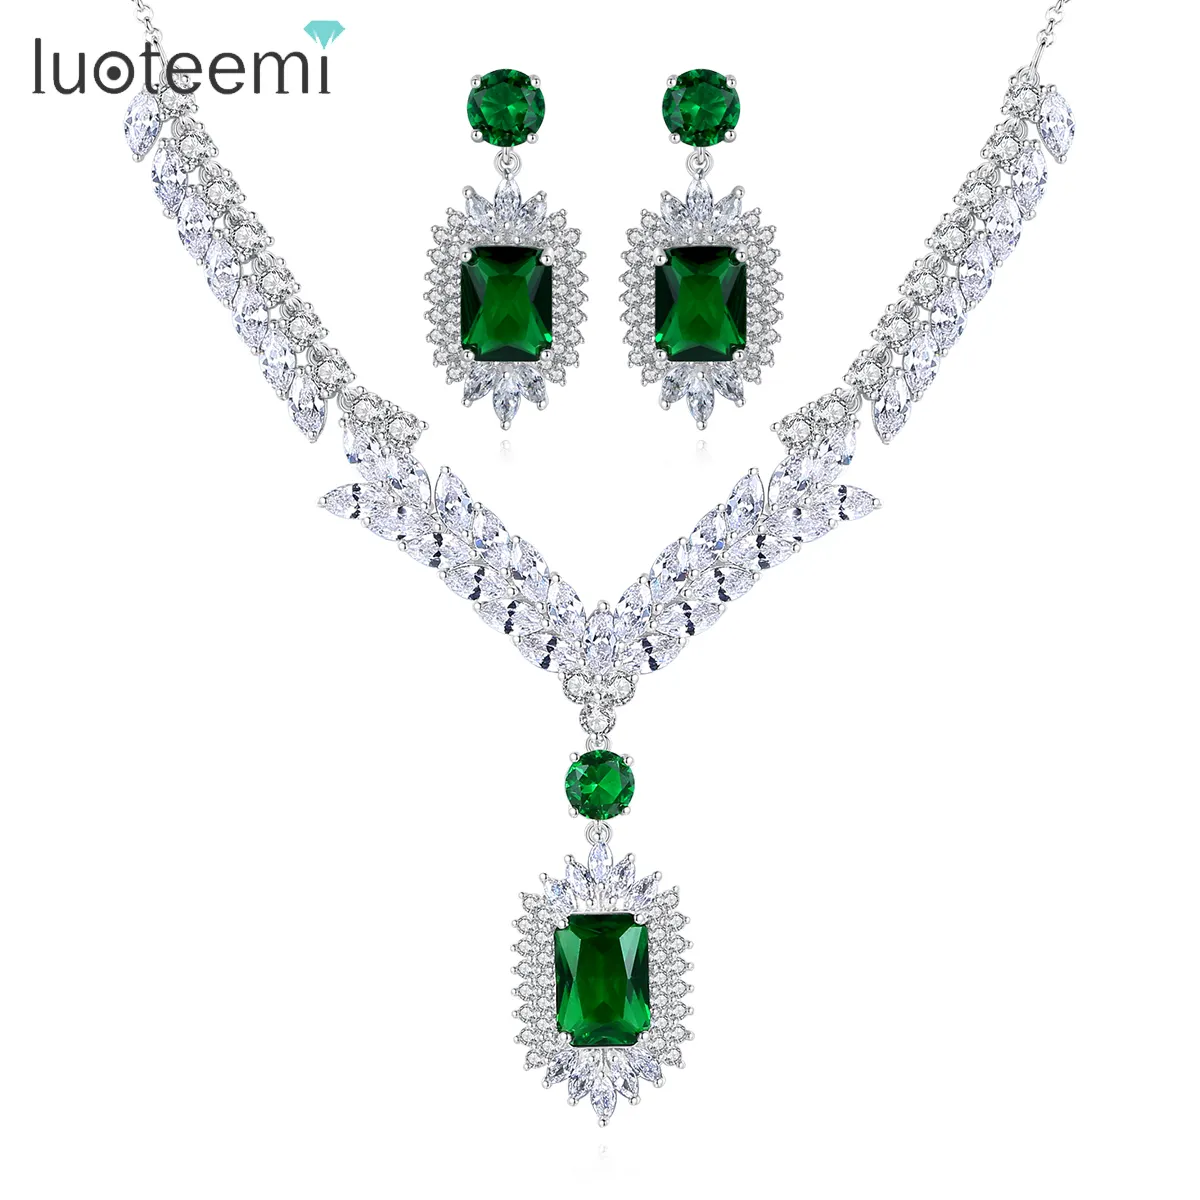 Luoteemi Hot Koop Luxe Vrouwen Emerald Sieraden Set Zirconia Ketting Oorbellen Sieraden Sets